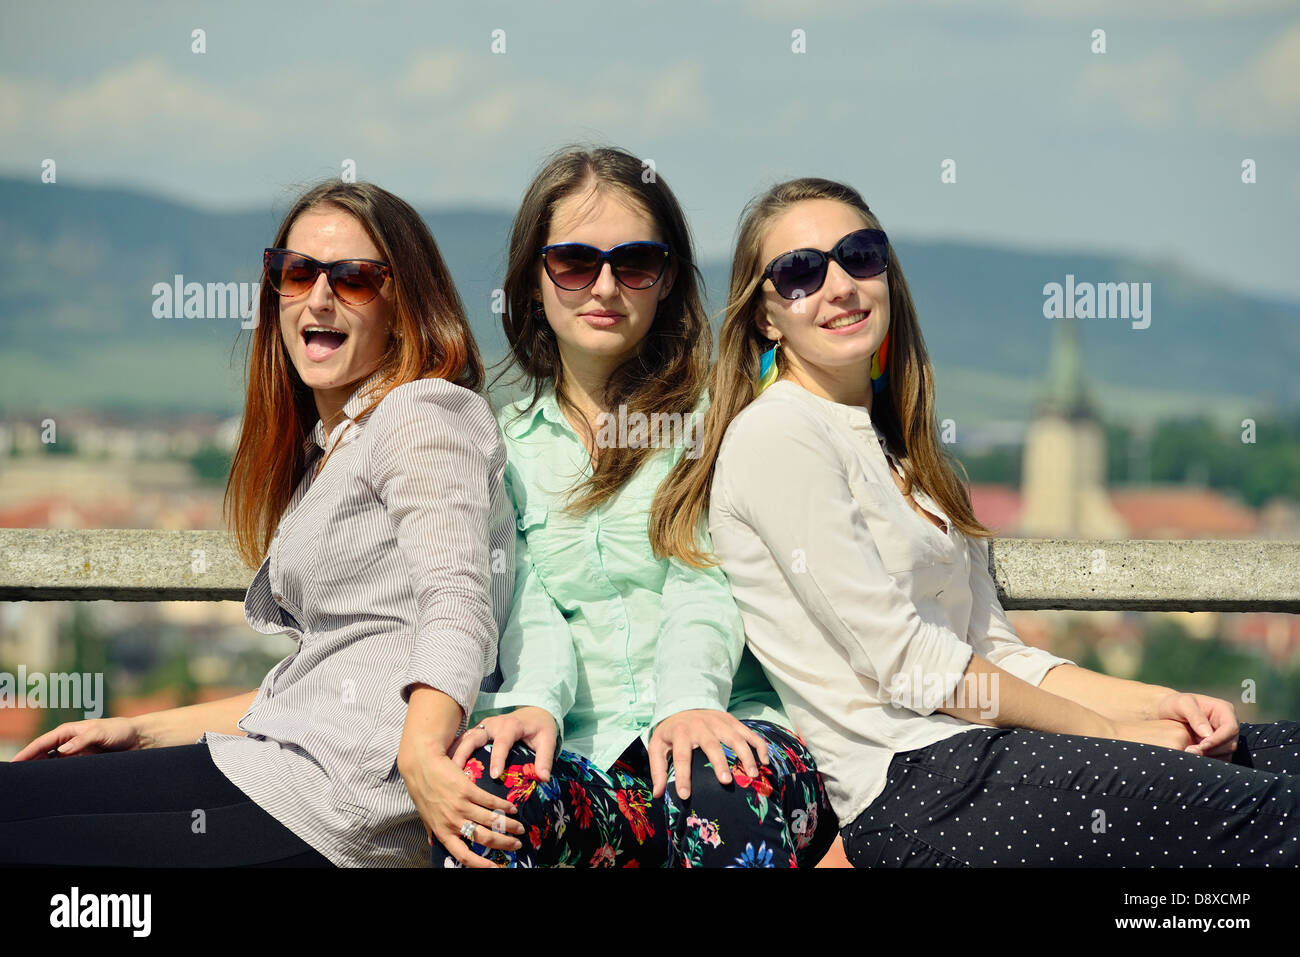 Tres jóvenes mujeres sonriendo mientras posan para la fotografía Foto de stock